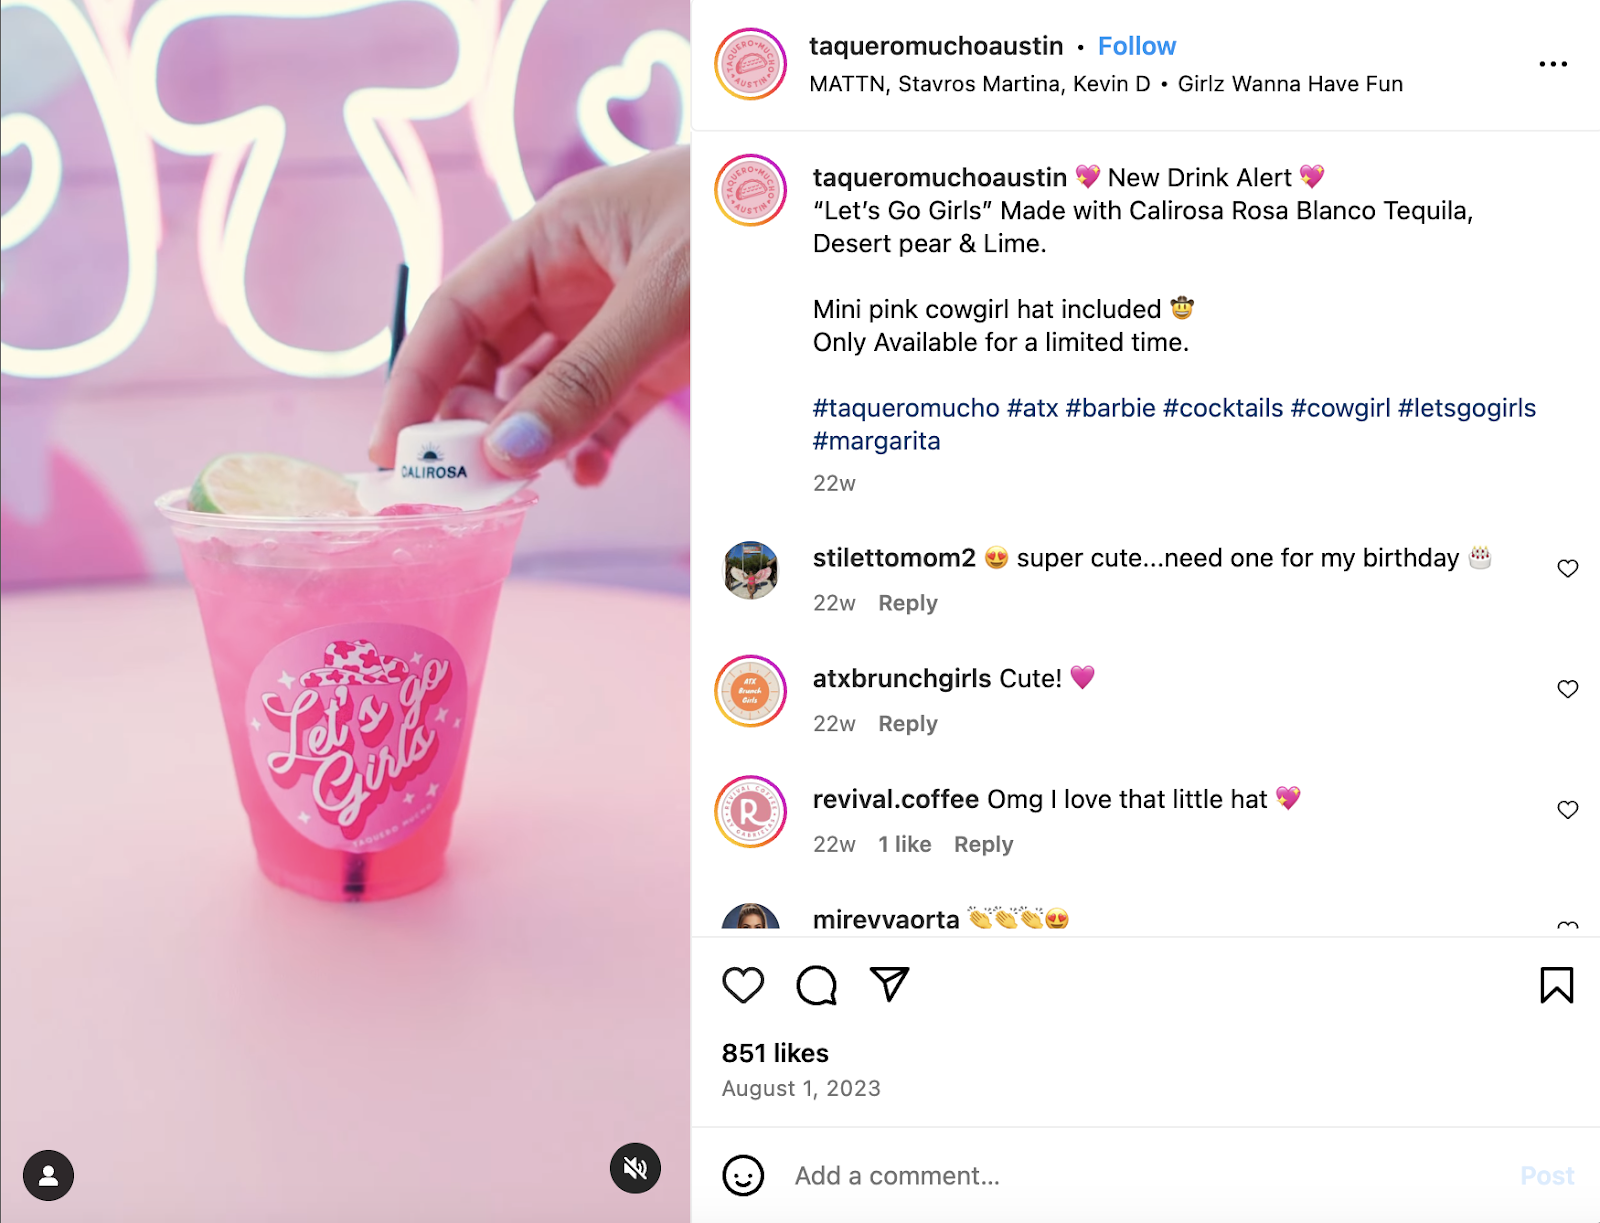 クリエイティブなマーケティング アイデア: Taquero Mucho Austin のピンクのバービーをテーマにしたドリンク。